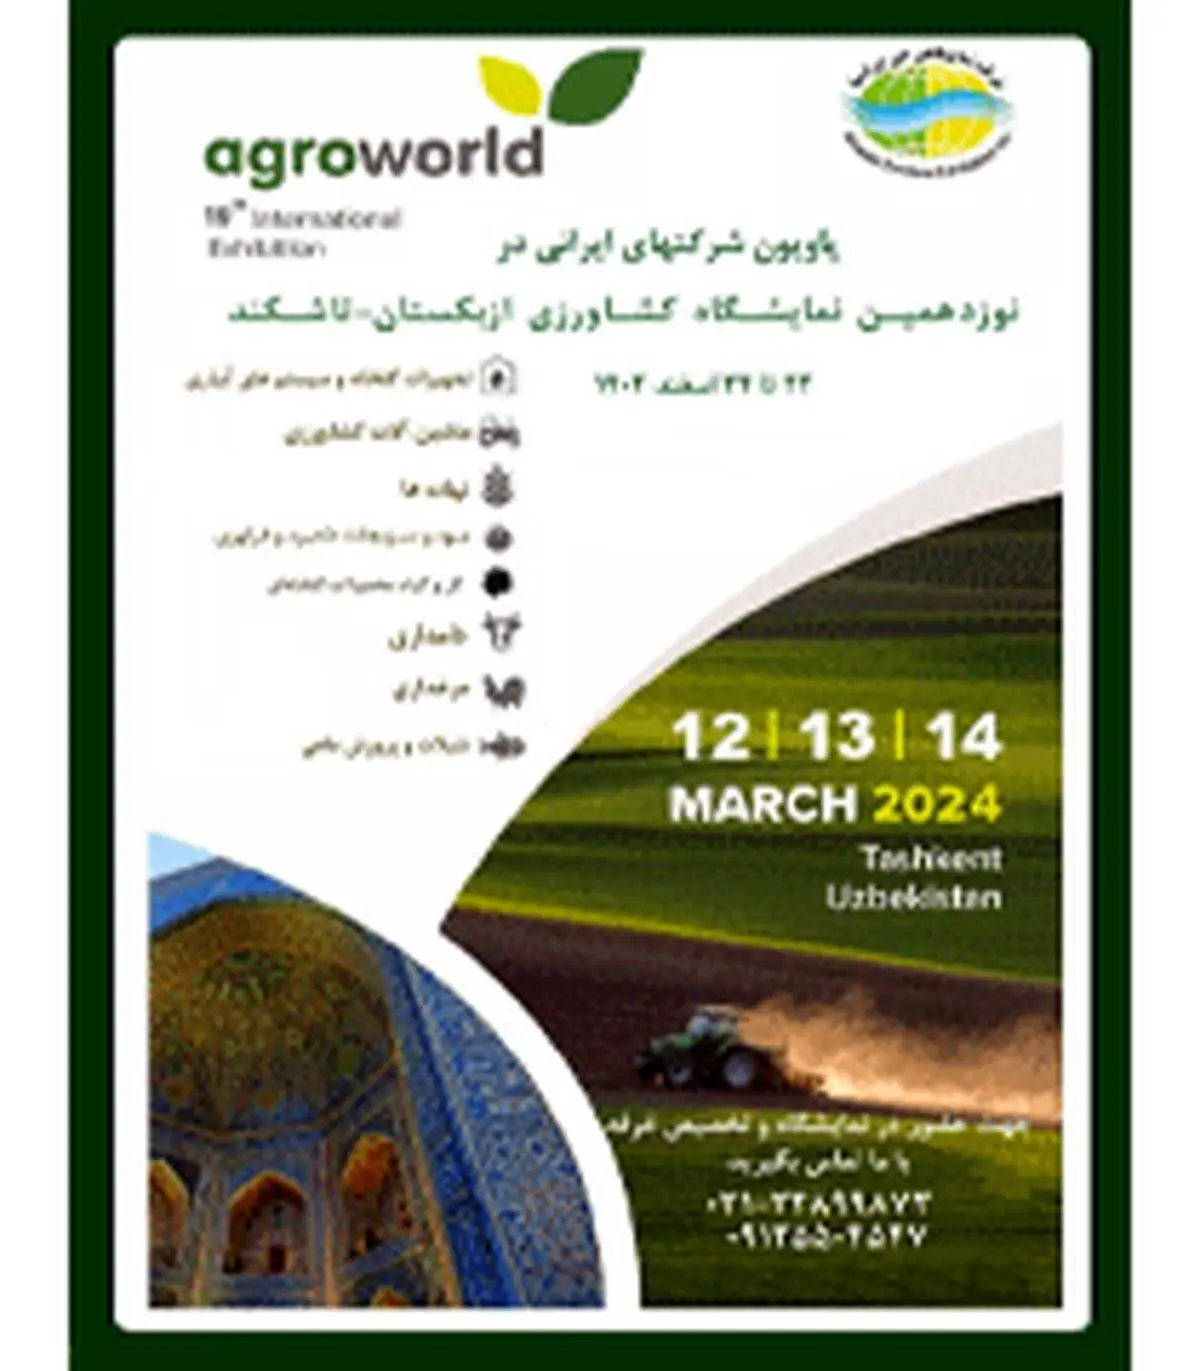 برگزاری نمایشگاه کشاورزی در تاشکند ازبکستان

